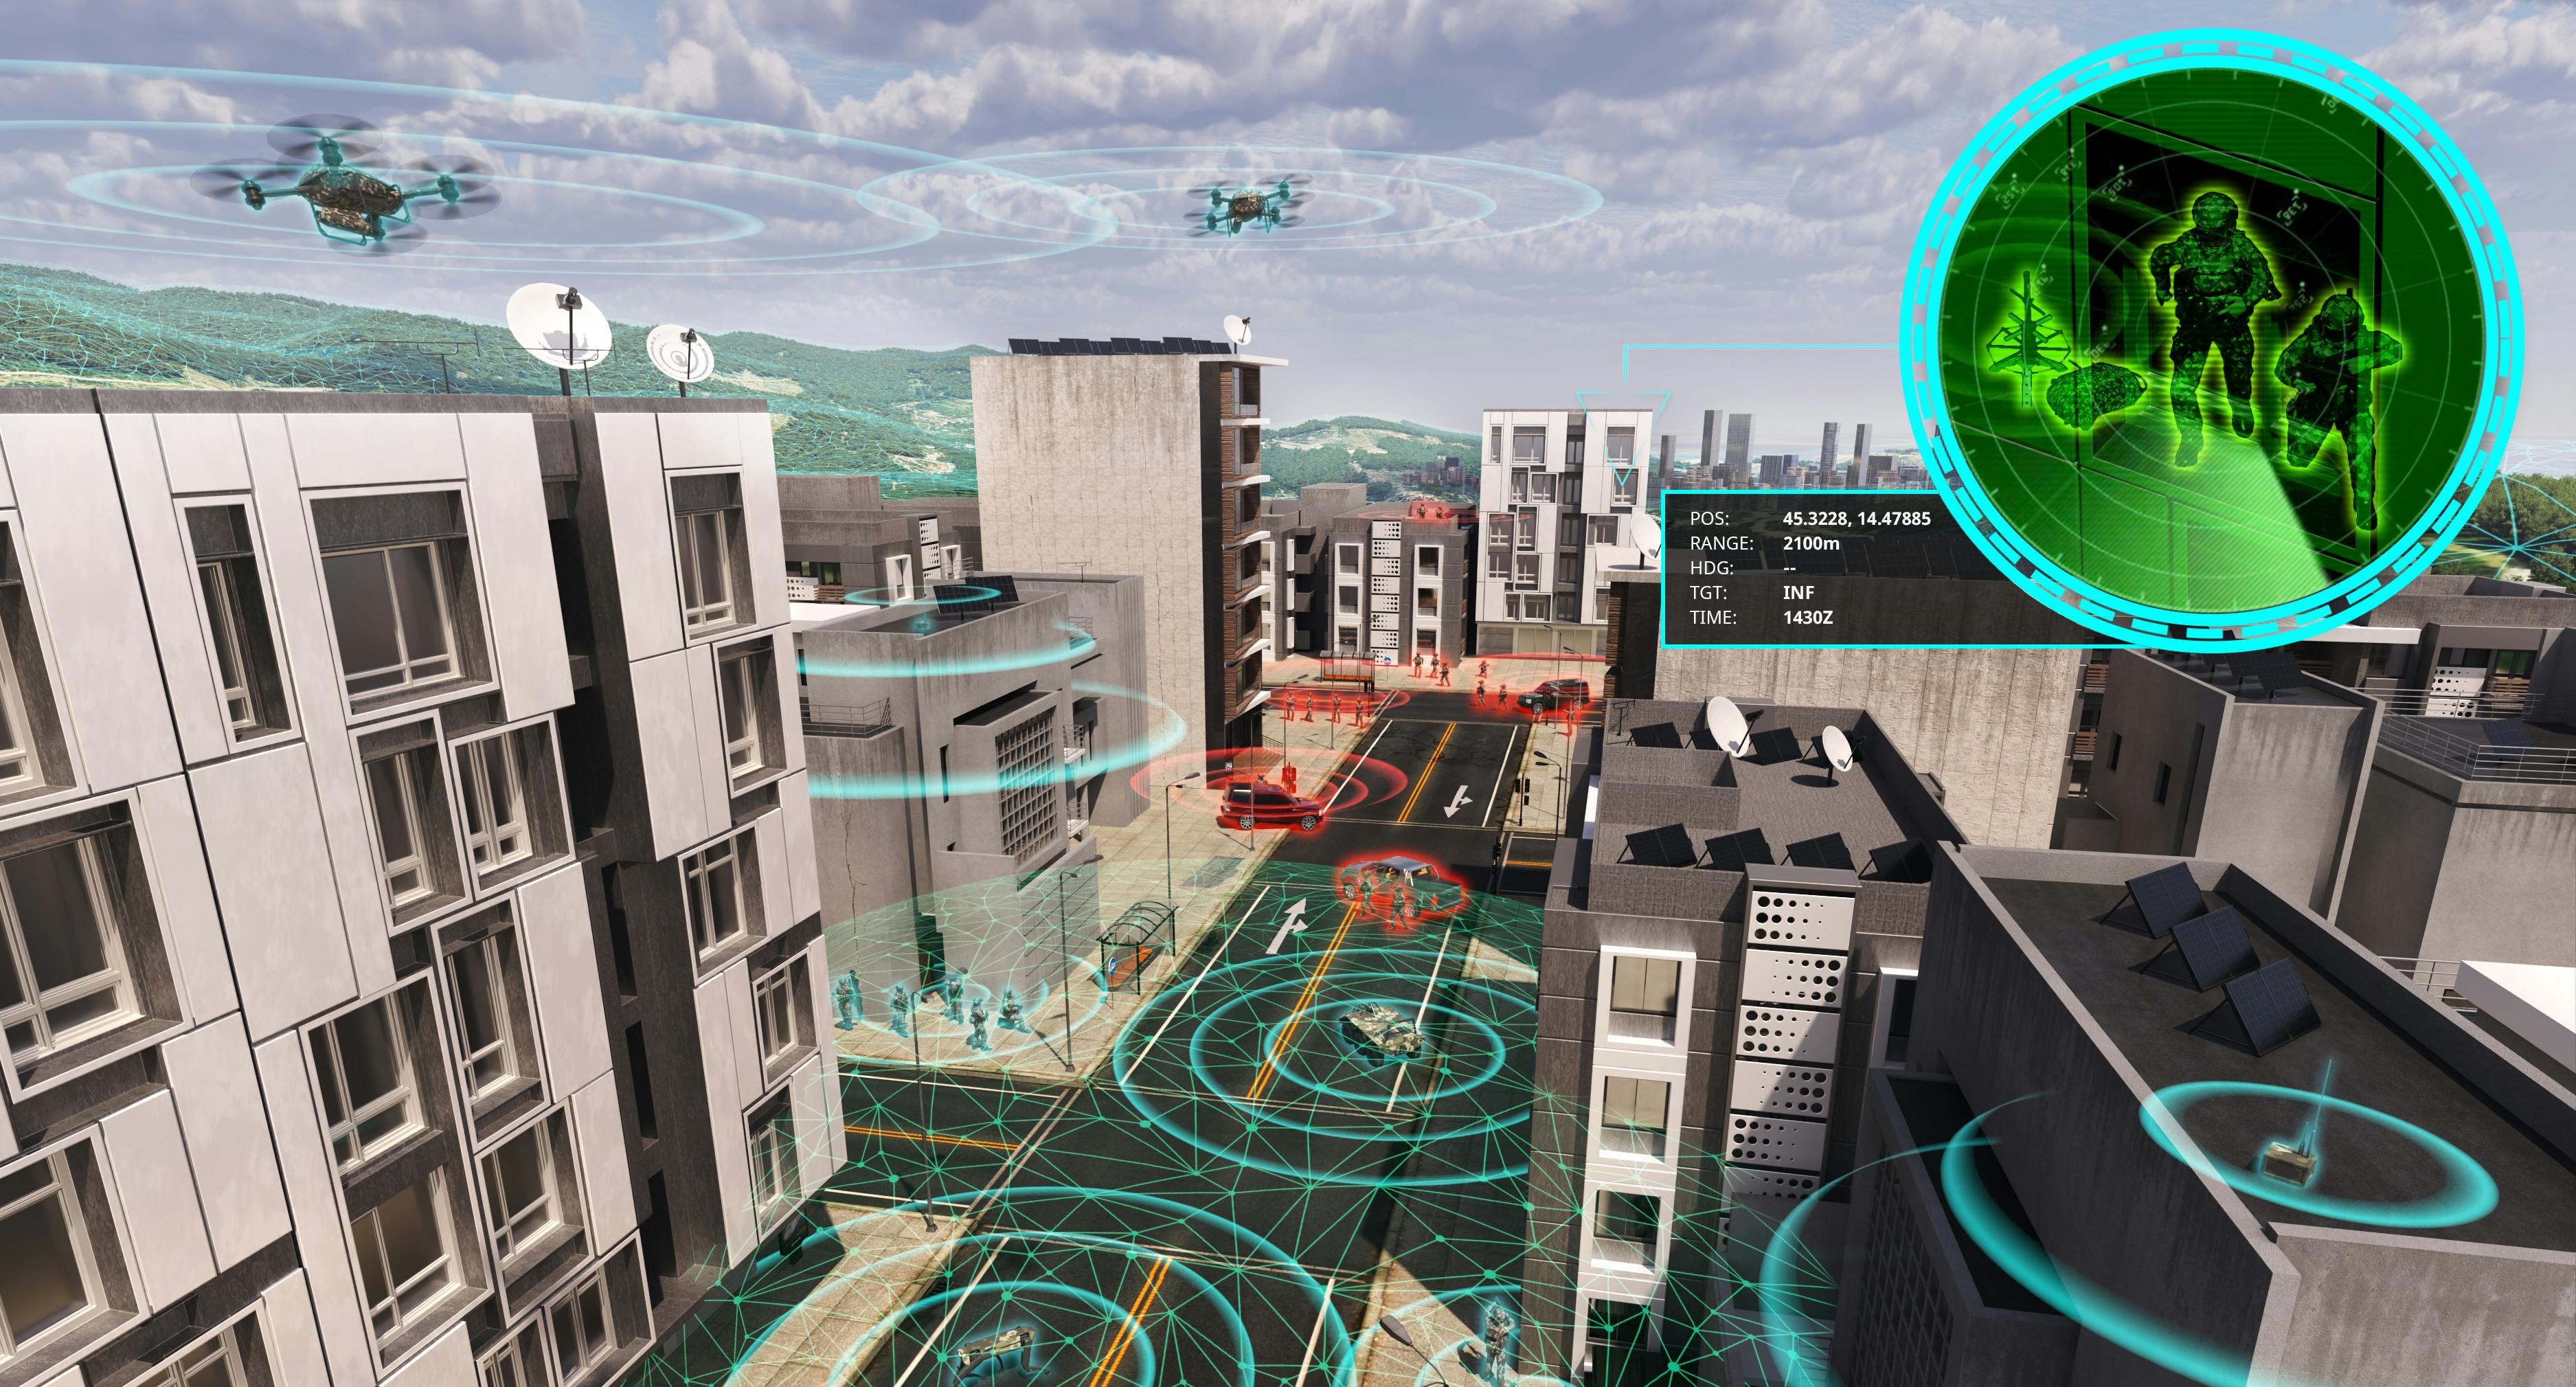 A CGI render of an urban environment.